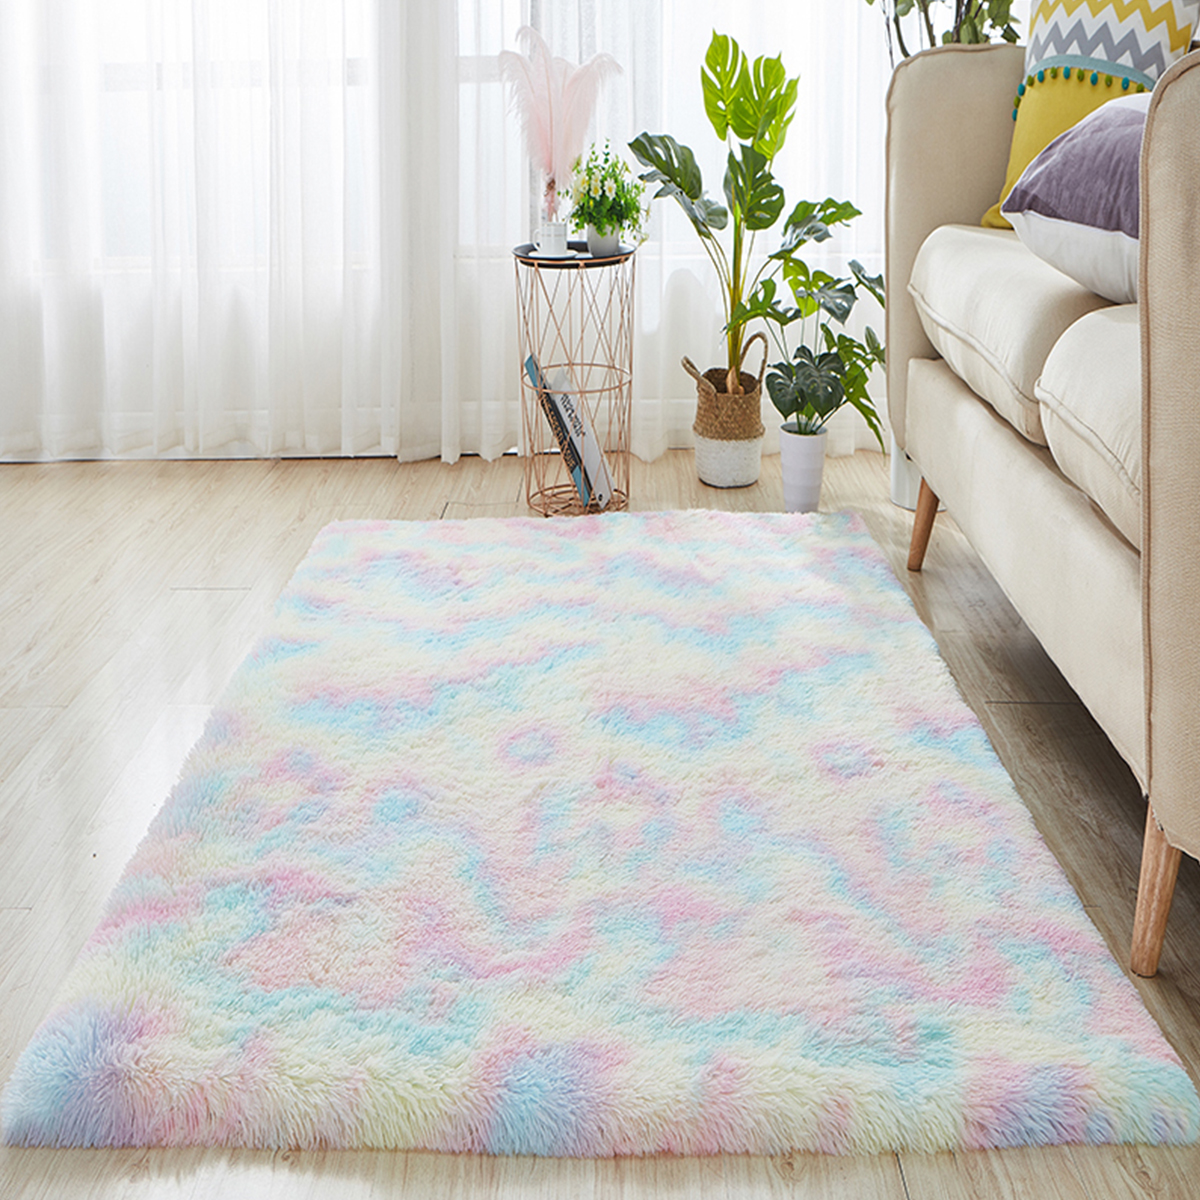 Gradient-Rainbow-Tie-dye-Plush-Carpet-Living-Room-Bedroom-Coffee-Table-Blanket-Study-Room-Meeting-Ro-1730407-4